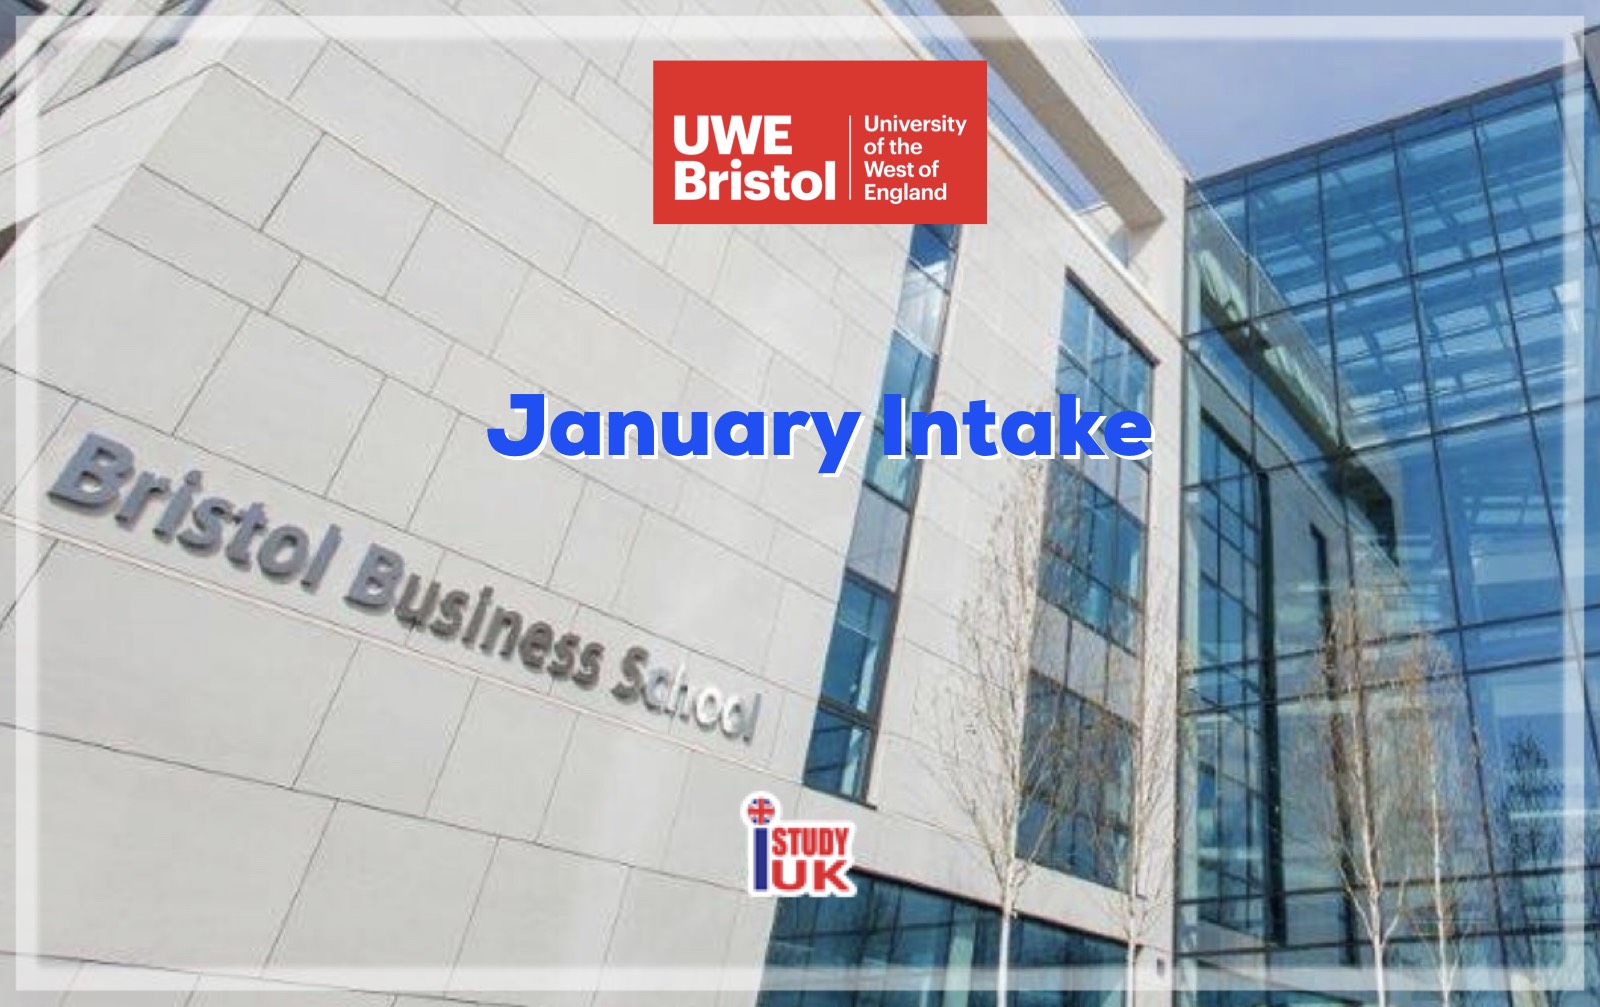 สมัครเรียนปริญญาโทปริญญาตรีอังกฤษลอนดอน January Intake at UWE - Bristol - University of the West of England, UK January 2019 กับเอเจนซี่เรียนต่ออังกฤษ I Study UK...We focus only UK